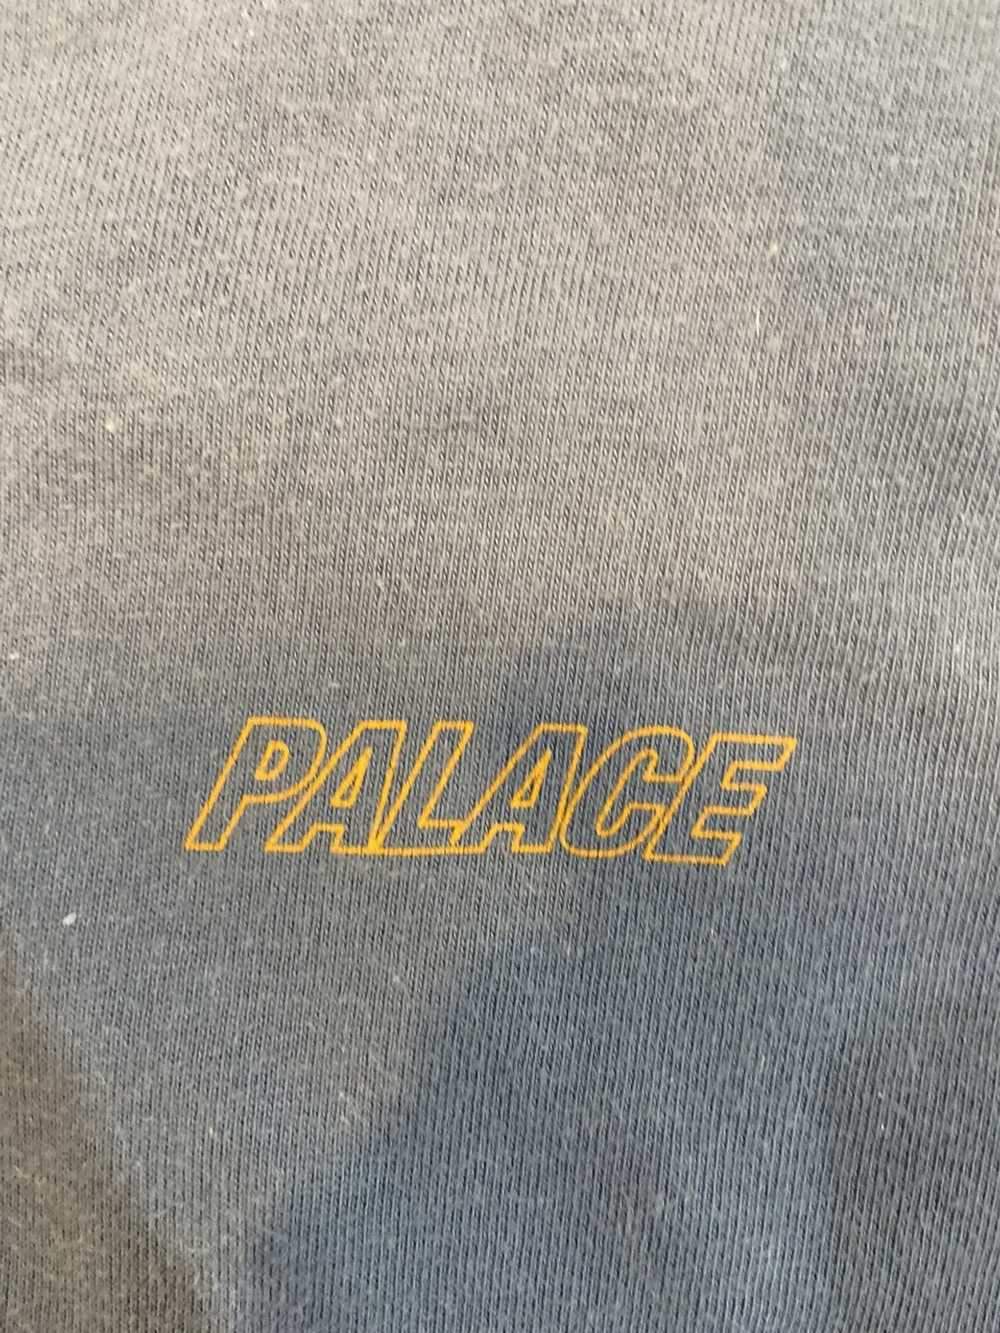 Palace Palace small logo t shirt - image 2